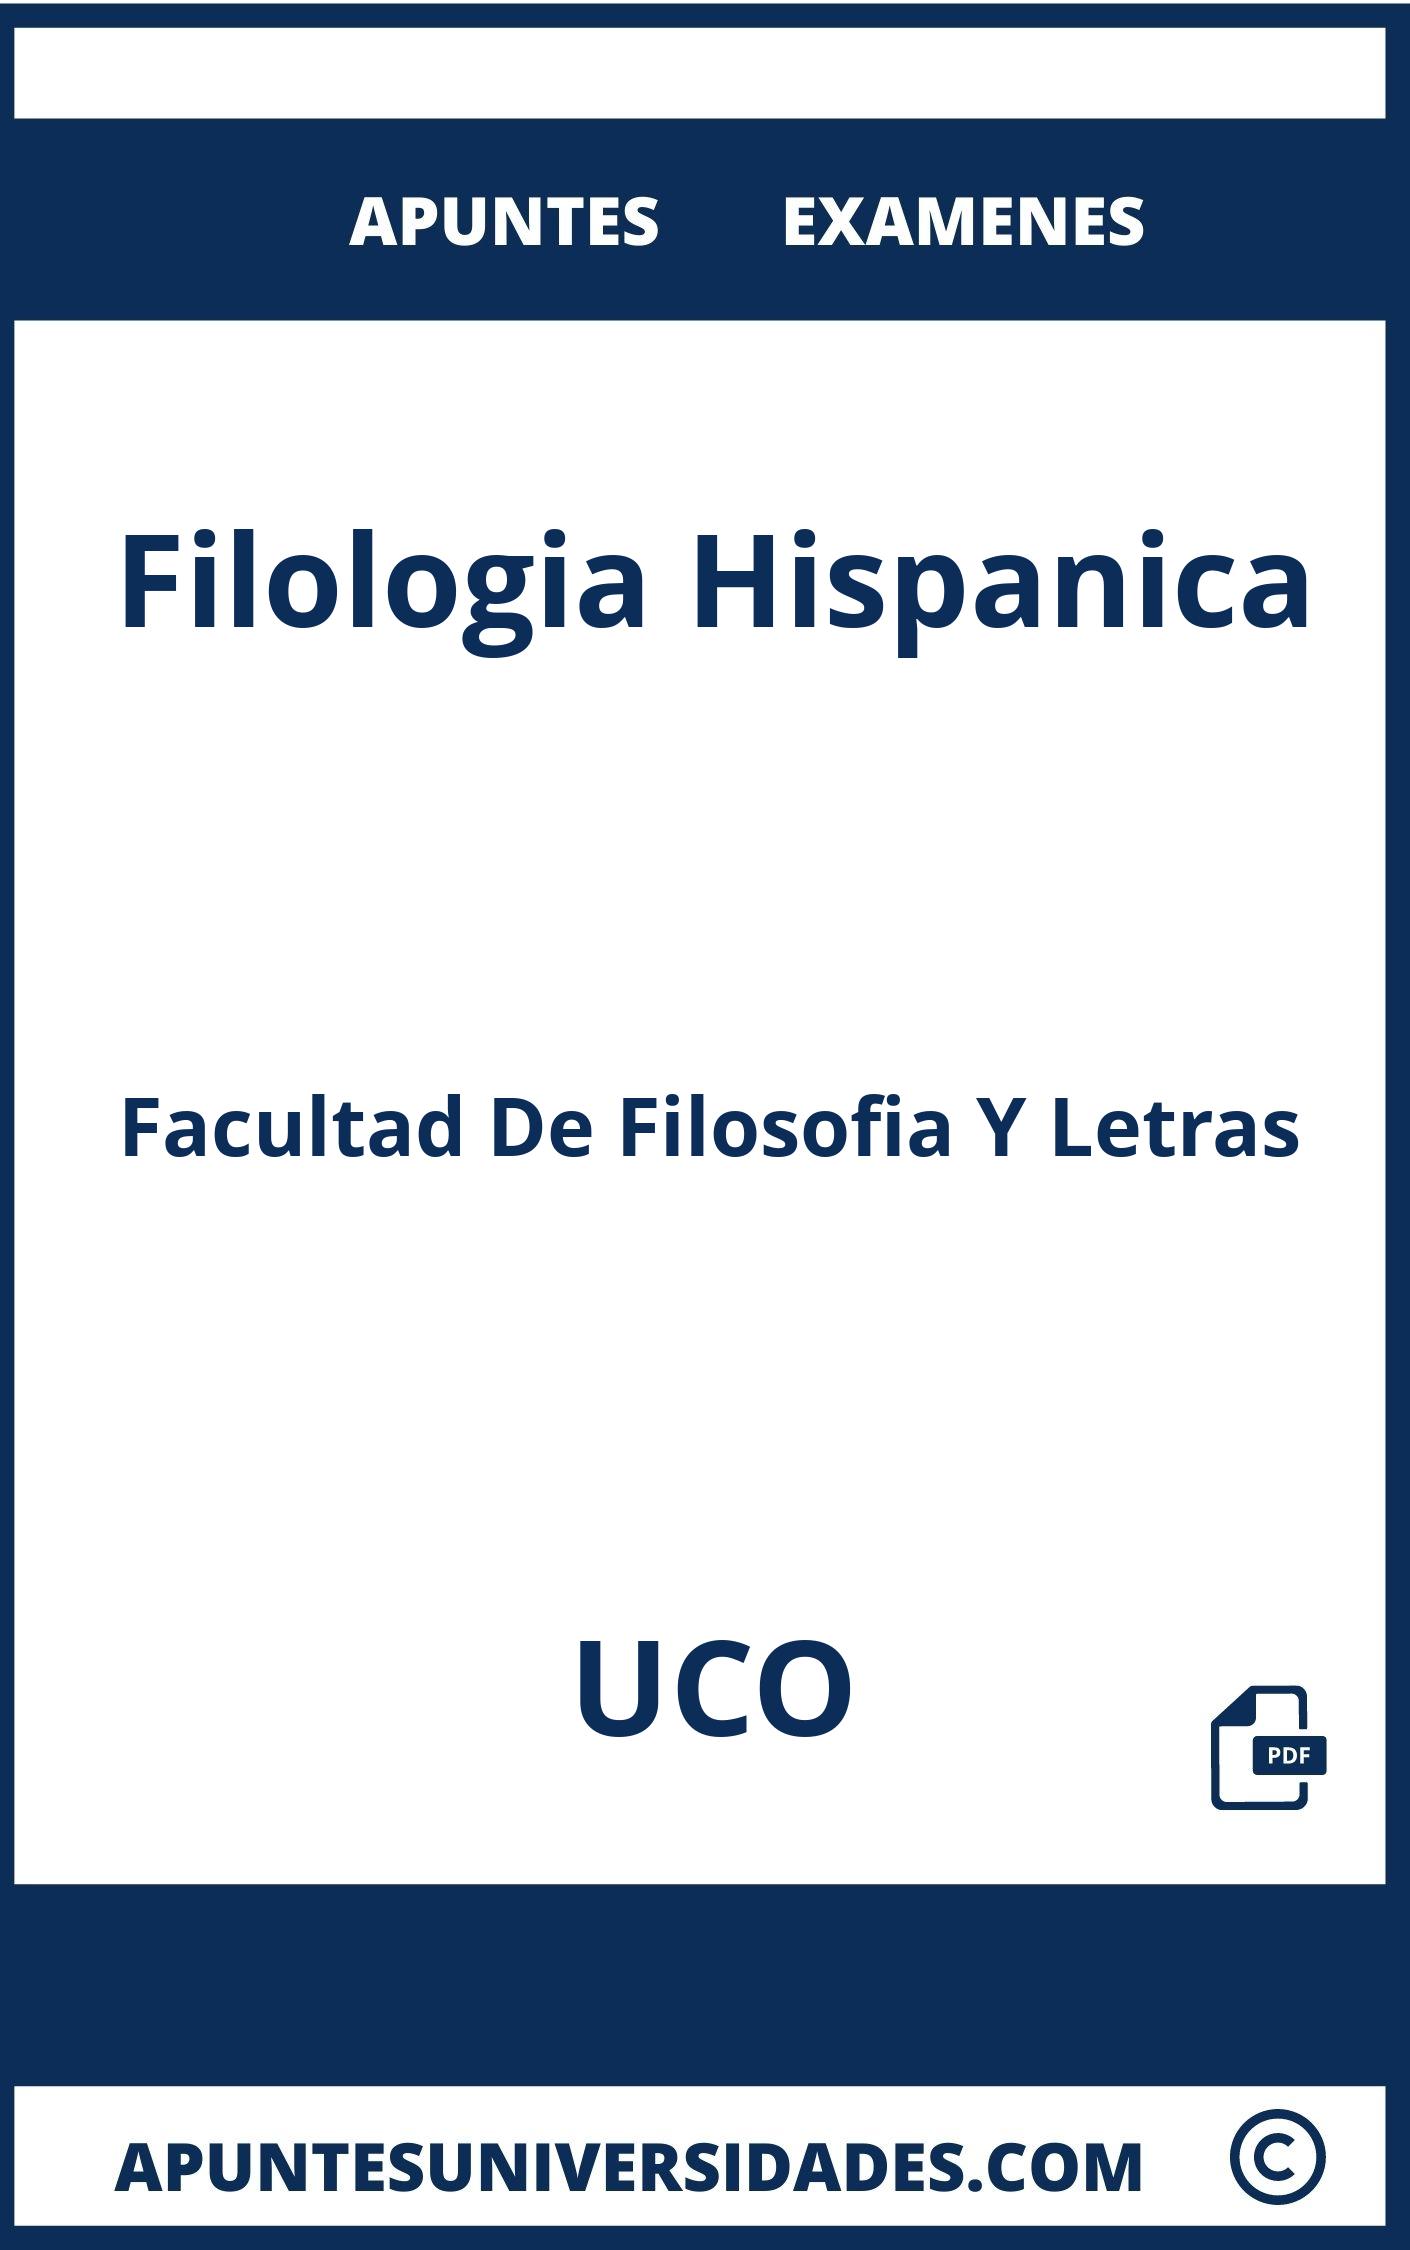 Filologia Hispanica UCO Examenes Apuntes